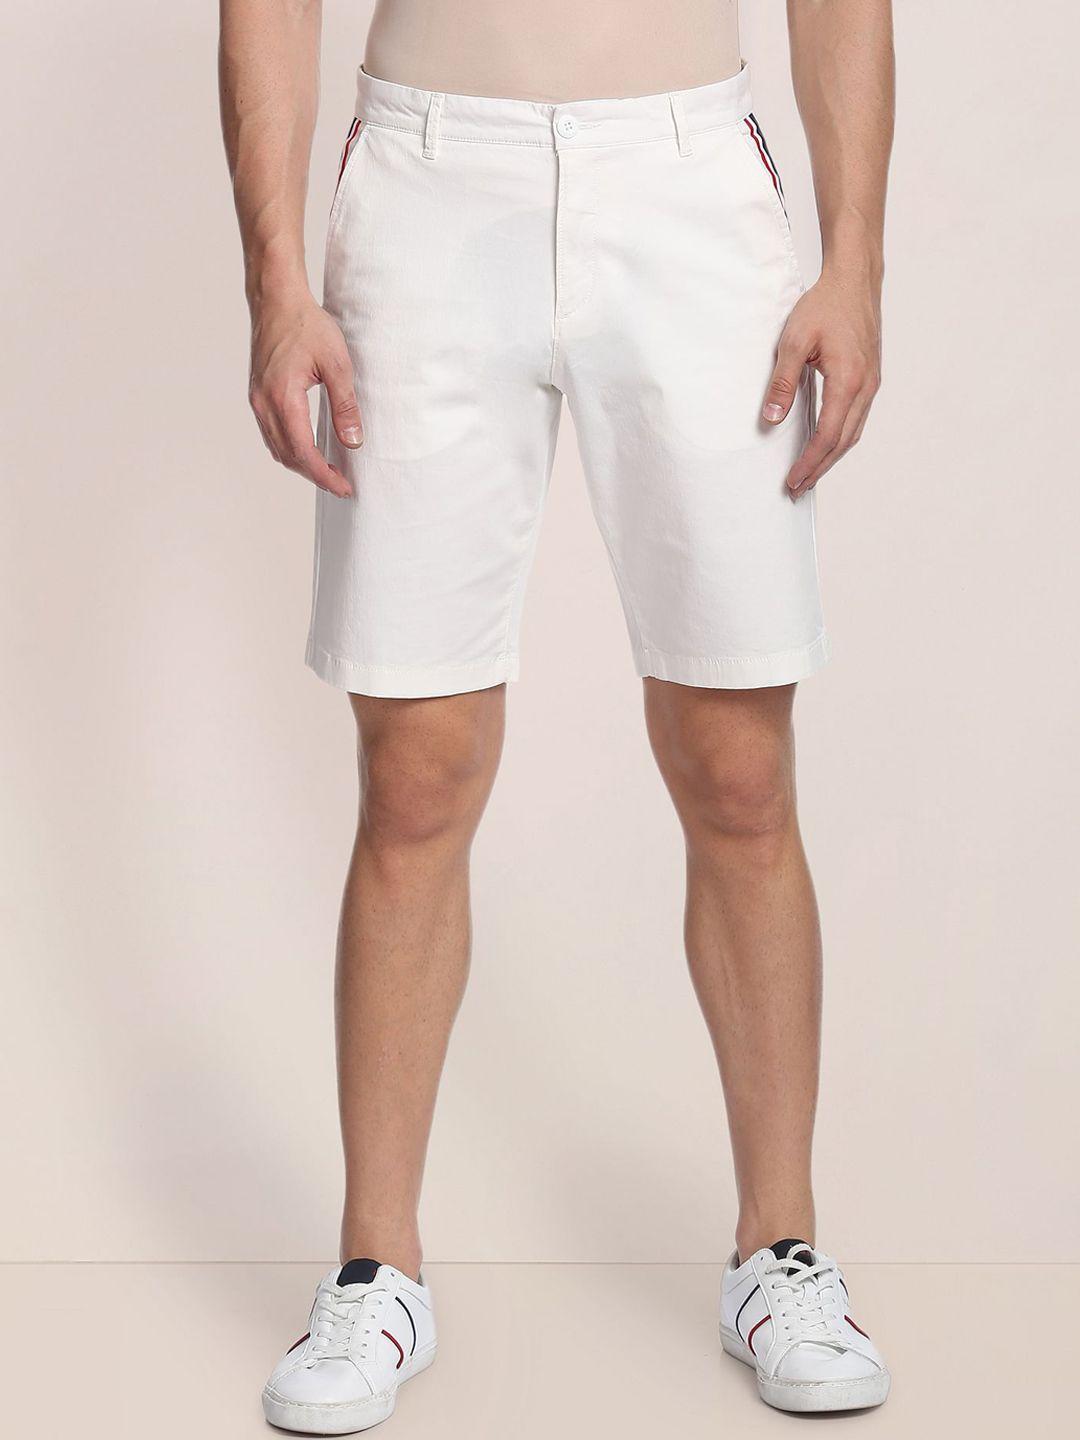 U.S. Polo Assn. Men Cotton Mid-Rise Slim Fit Shorts